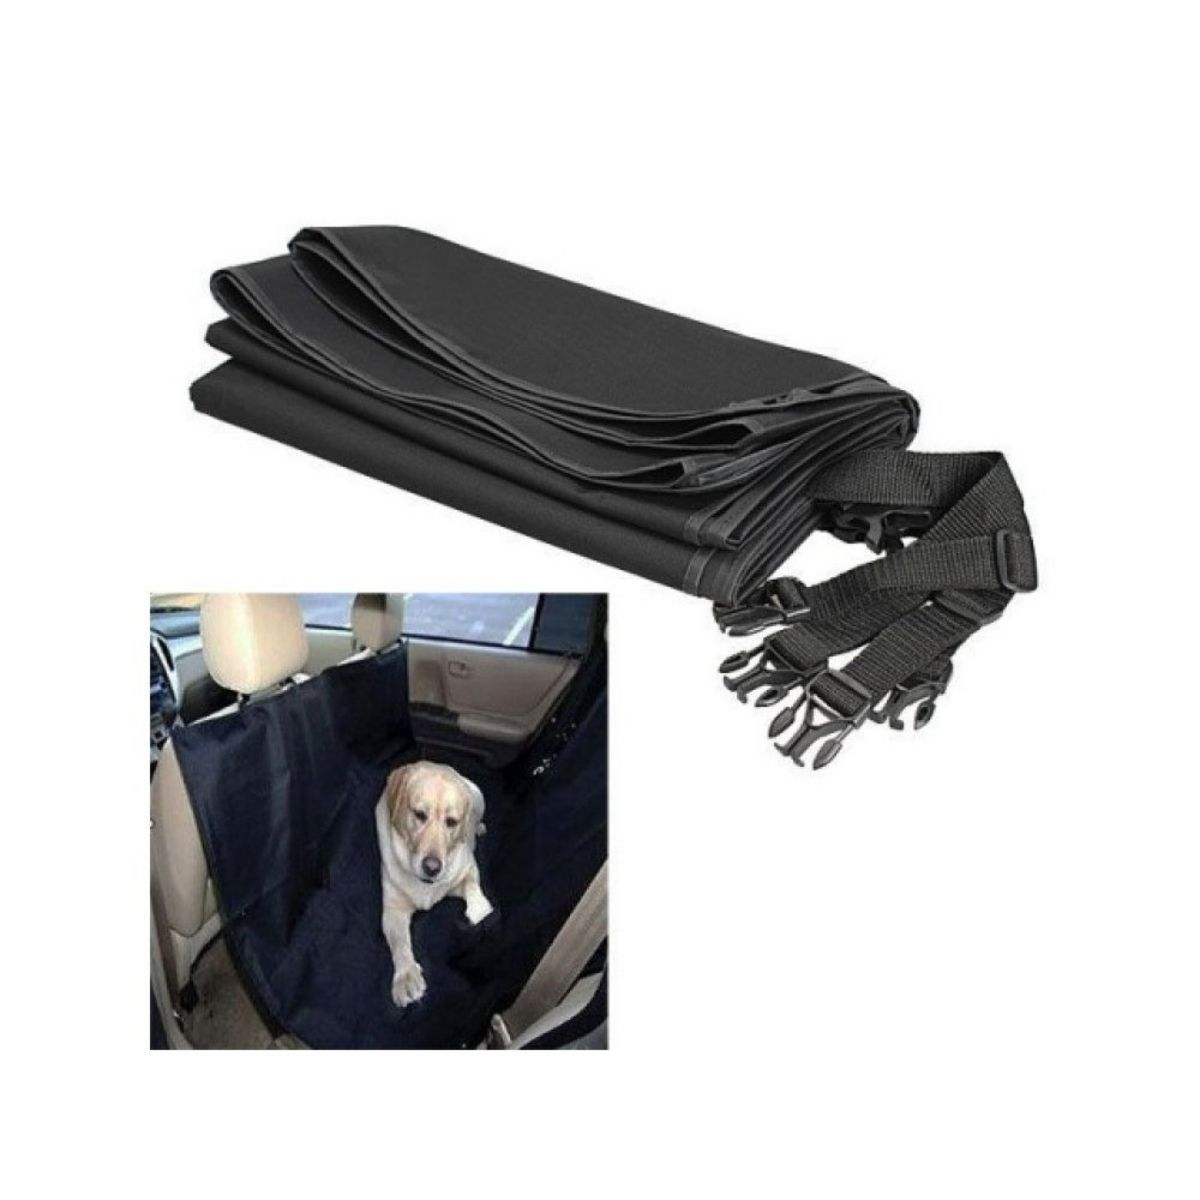  Couverture de protection pour voiture chien chat noir